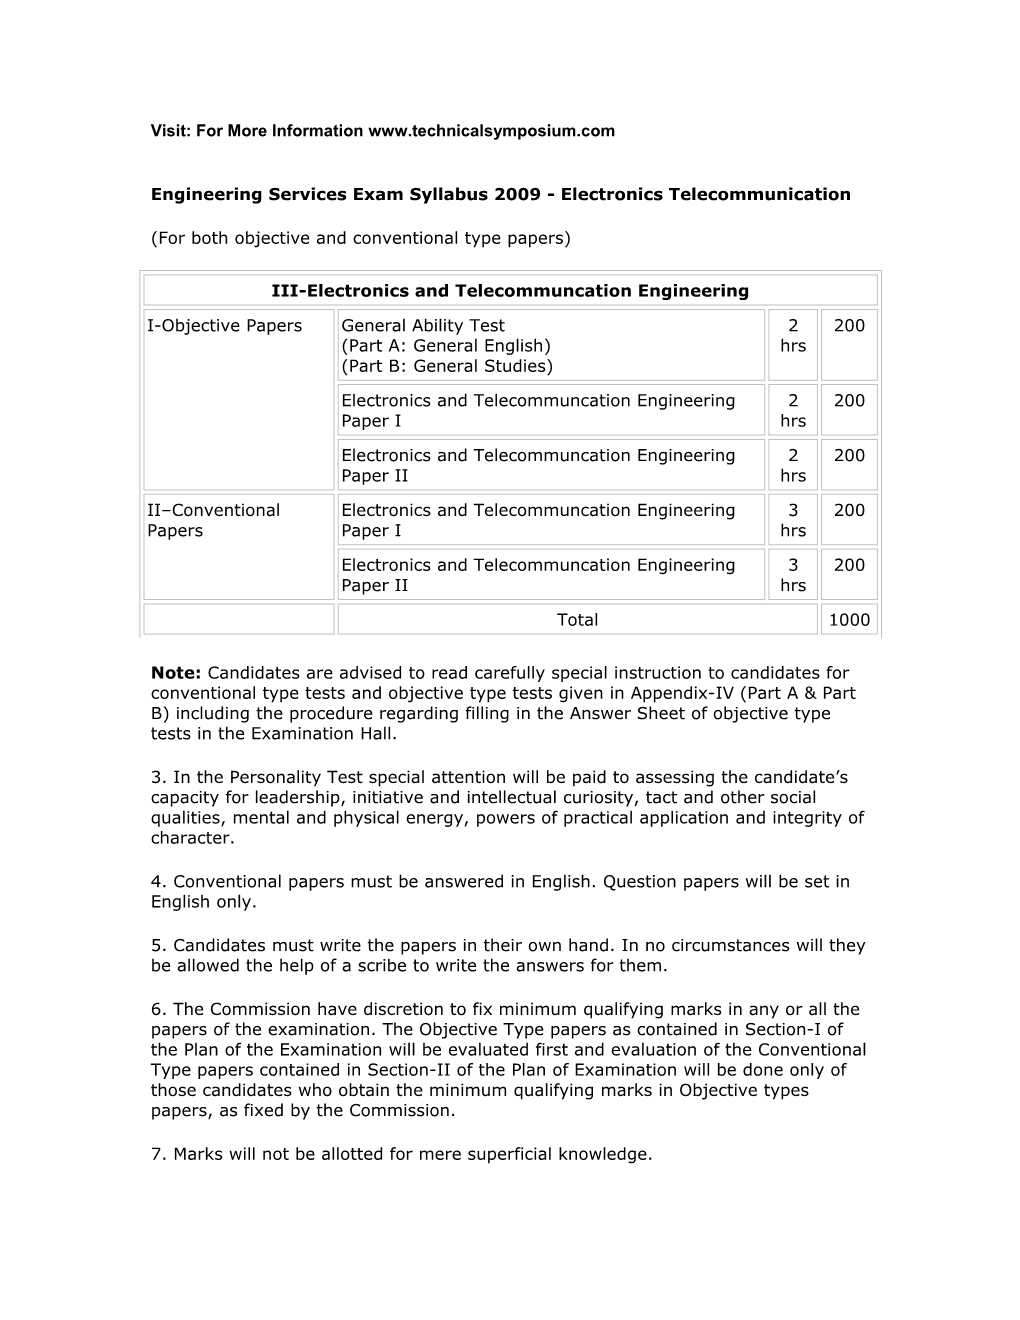 Engineering Services Exam Syllabus 2009 - Electronics Telecommunication